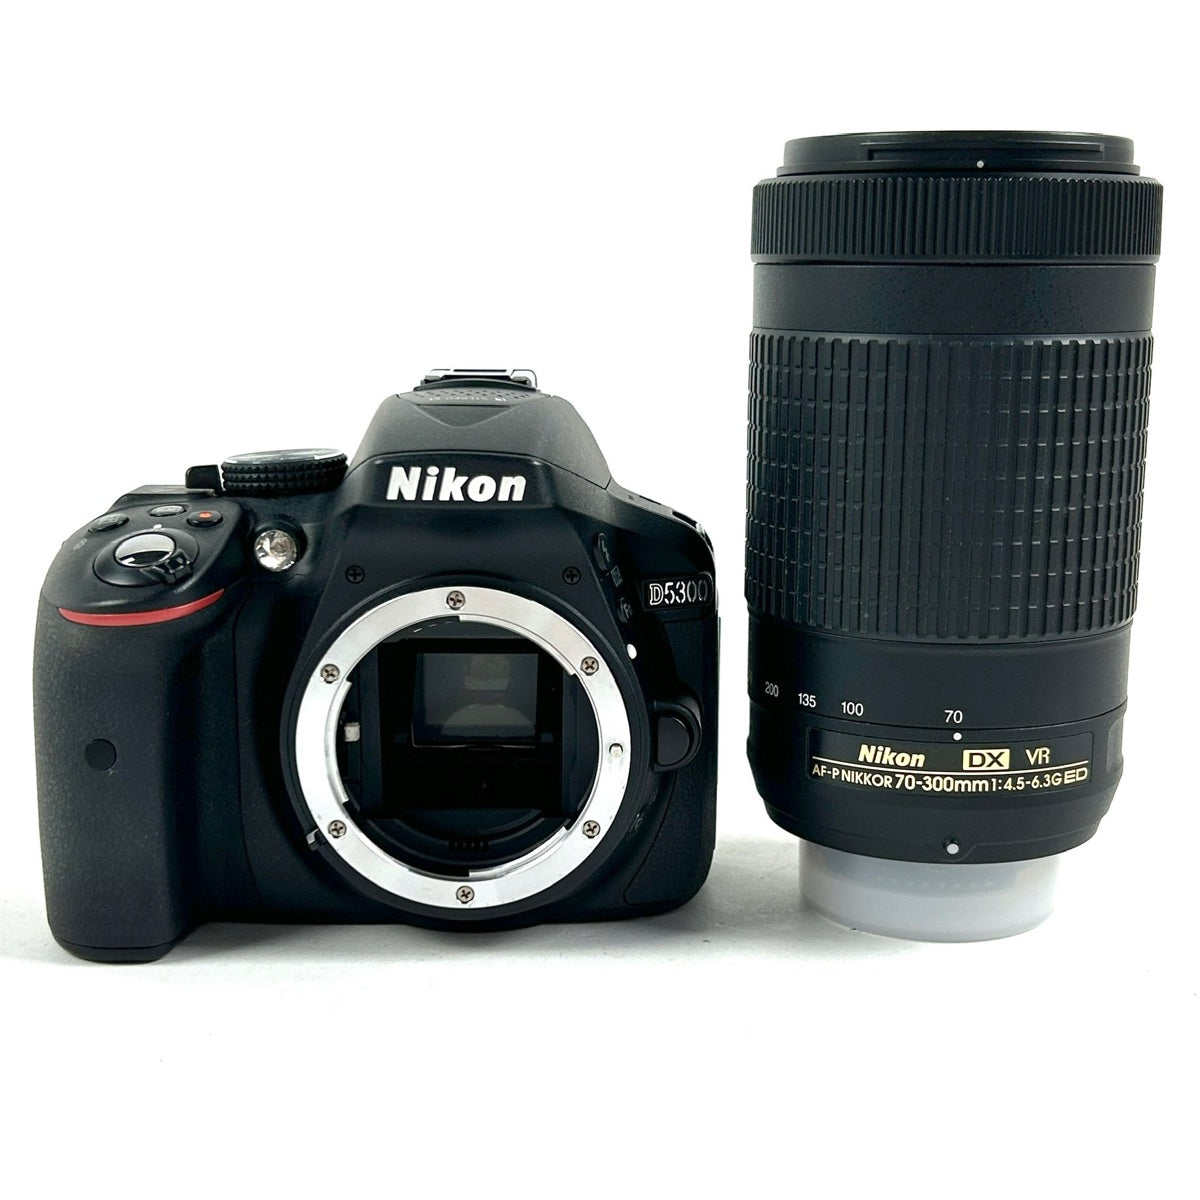 バイセル公式】ニコン Nikon D5300 + AF-P NIKKOR 70-300mm F4.5-6.3G 